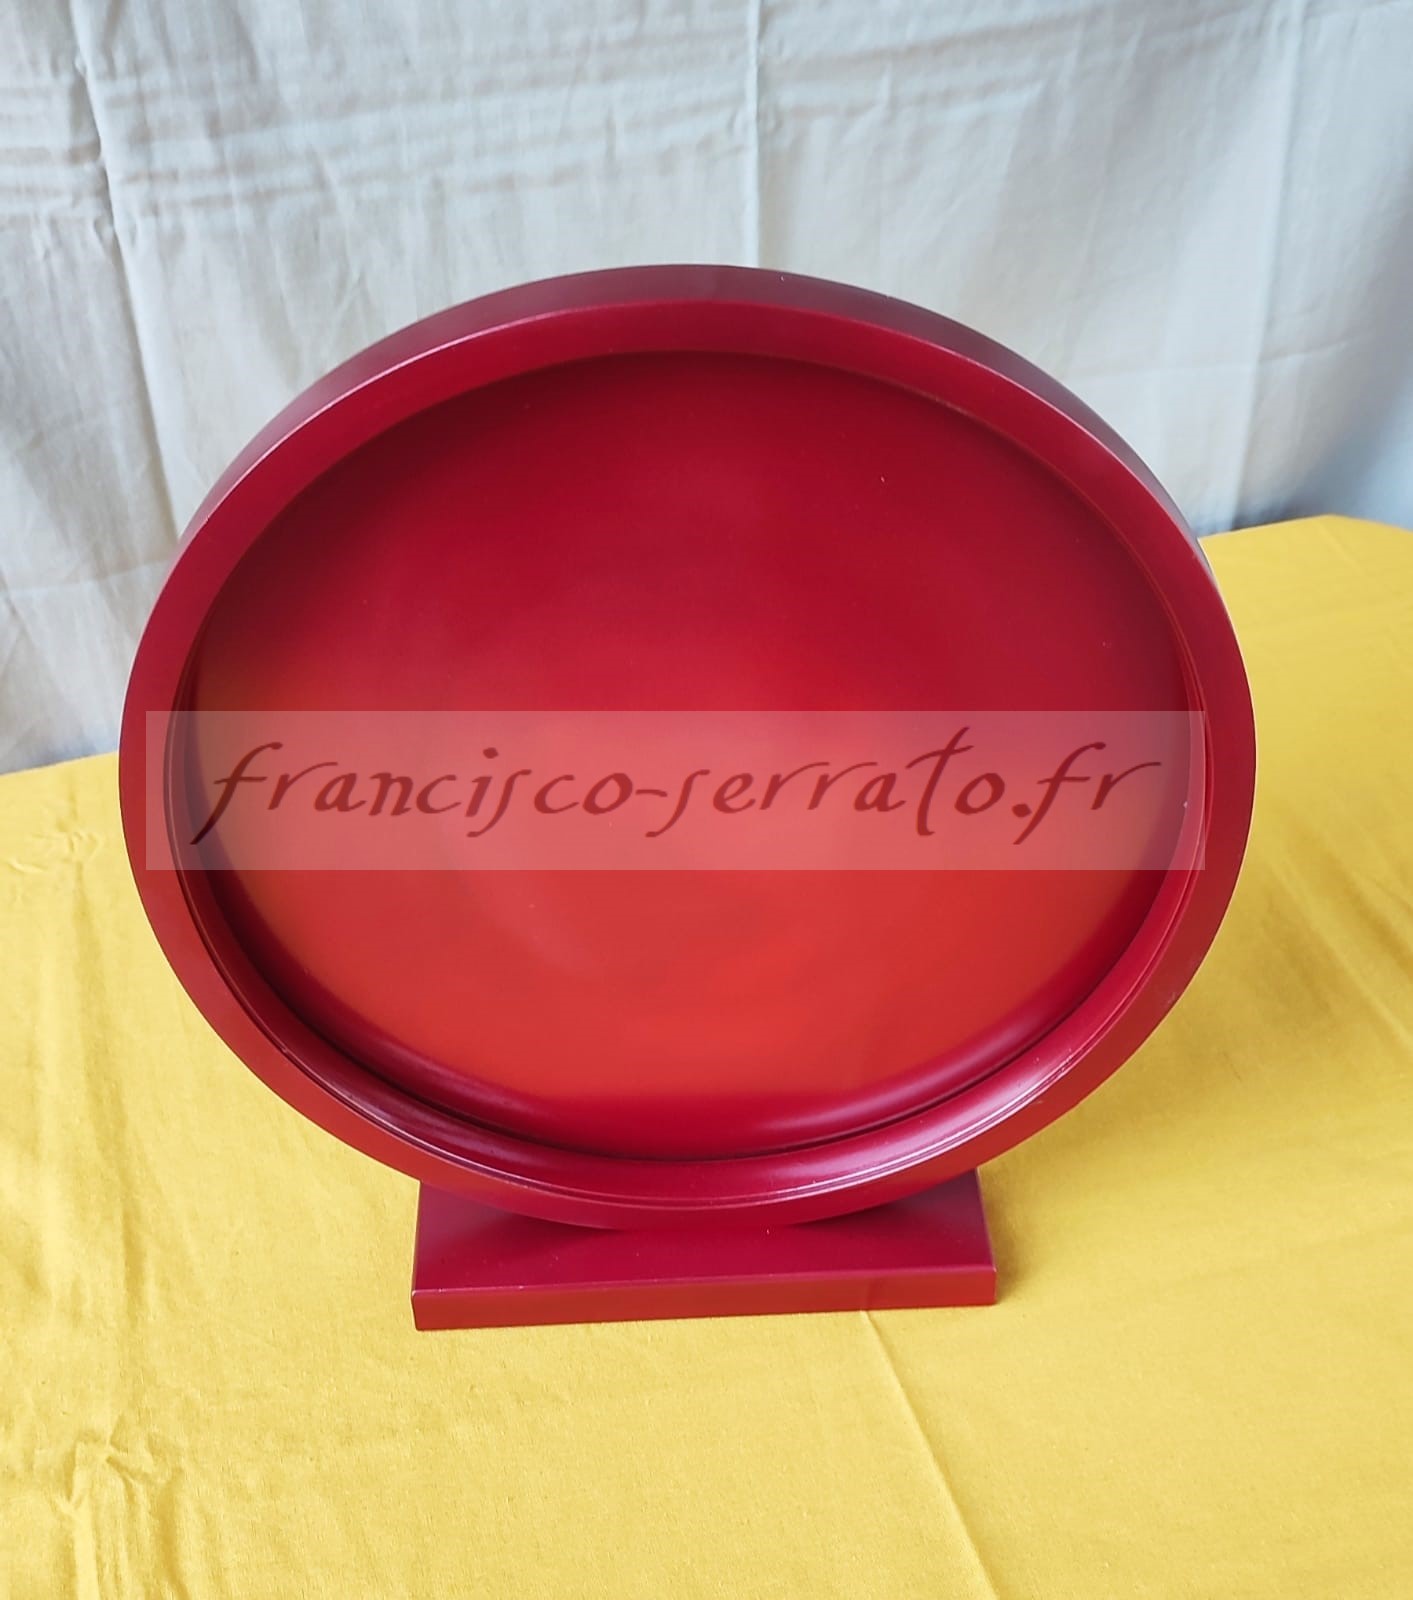 Un ruban led et un miroir peint compose cette lampe ronde de couleur rouge métallisé